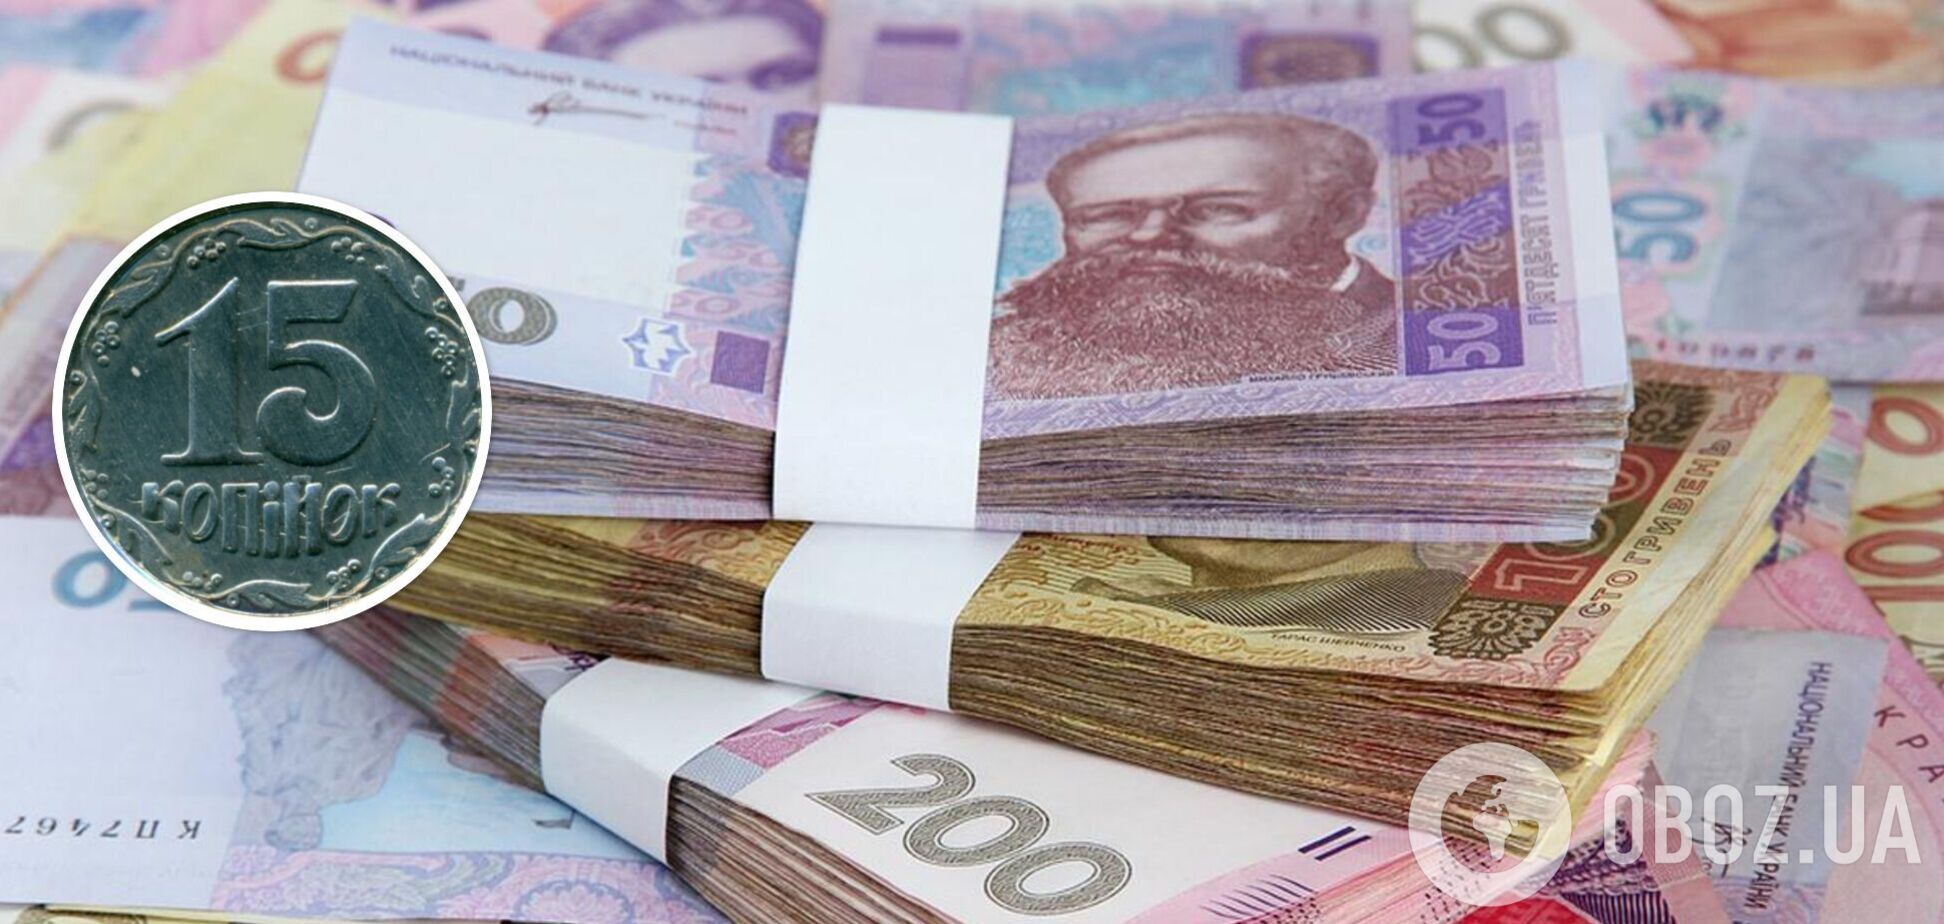 Украинскую монету продают в 200 тыс. раз дороже номинала